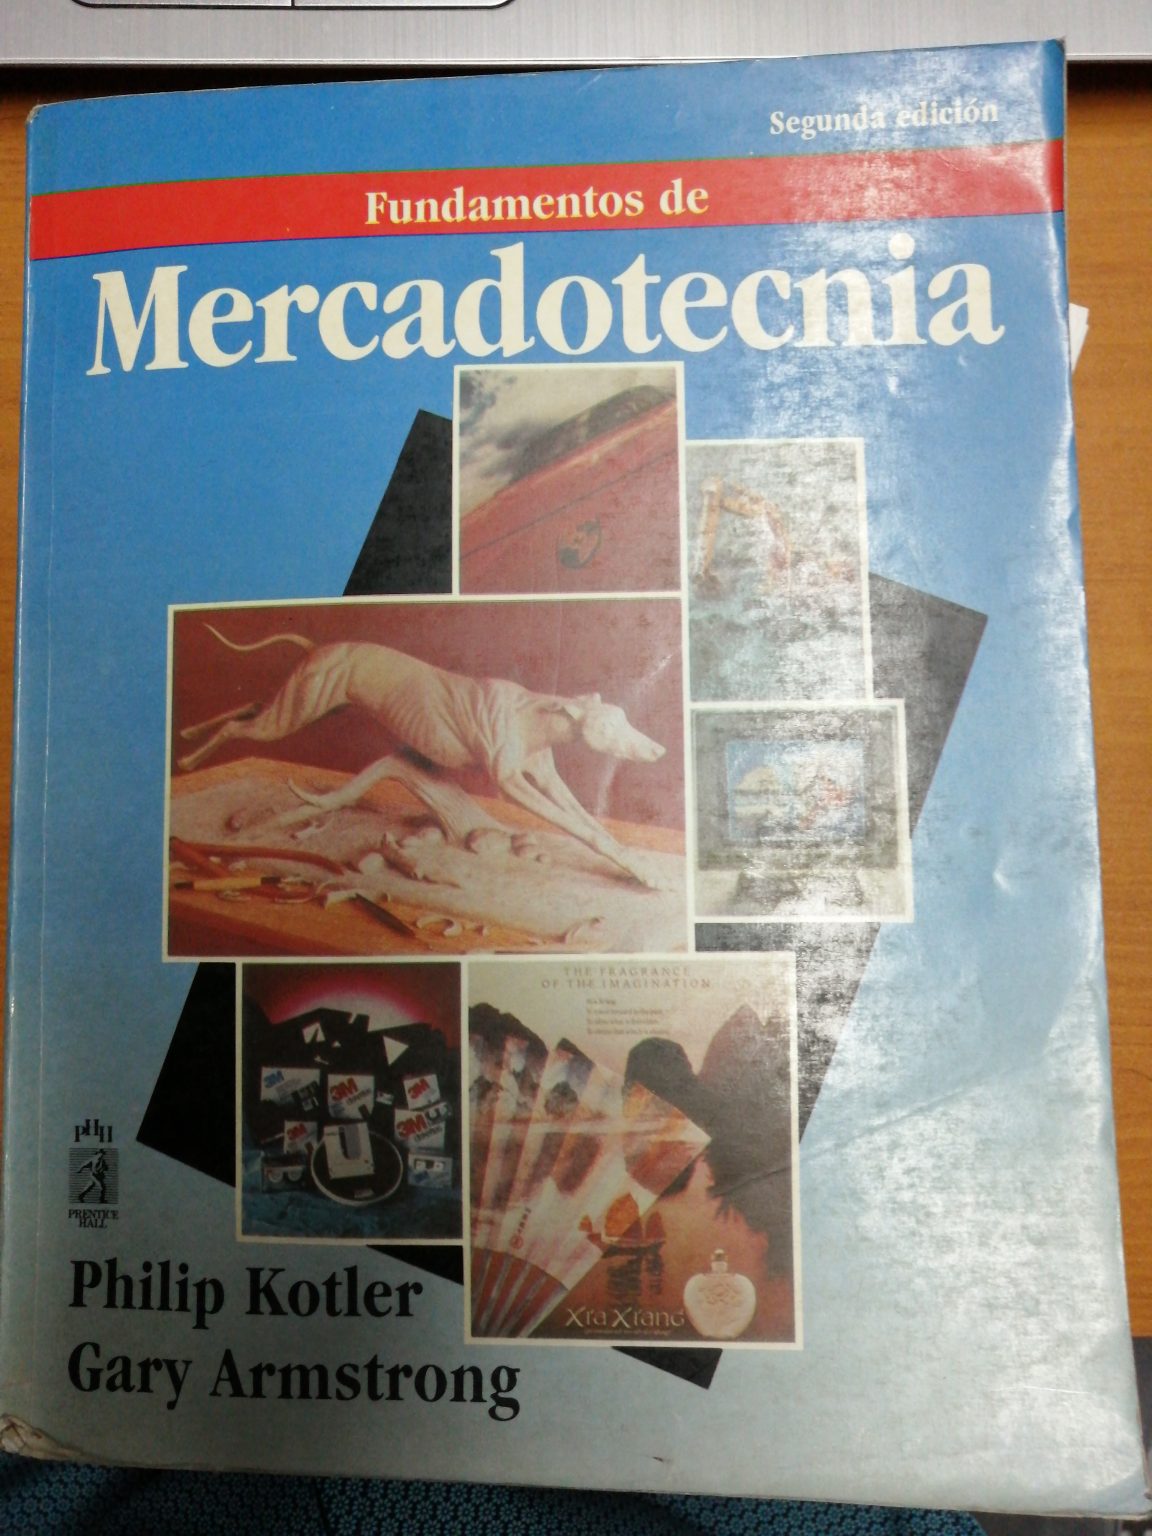 Bookat La Plataforma De Compra Venta De Libros Fundamentos De Mercadotecnia Segunda Edición 6719